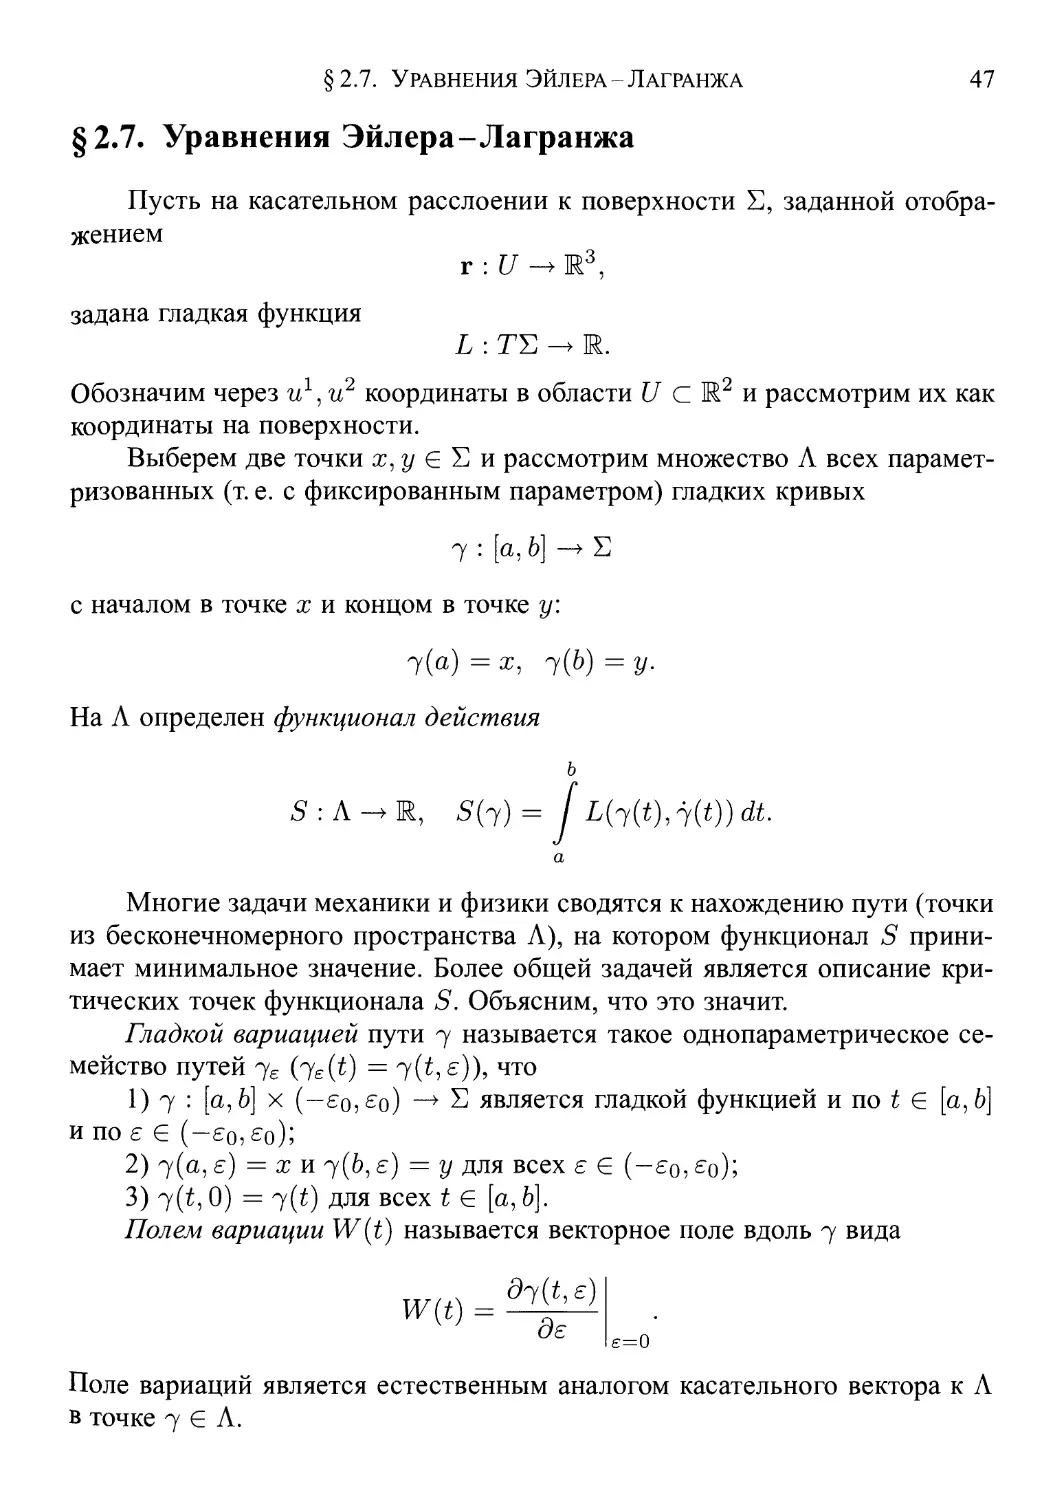 § 2.7. Уравнения Эйлера-Л агранжа